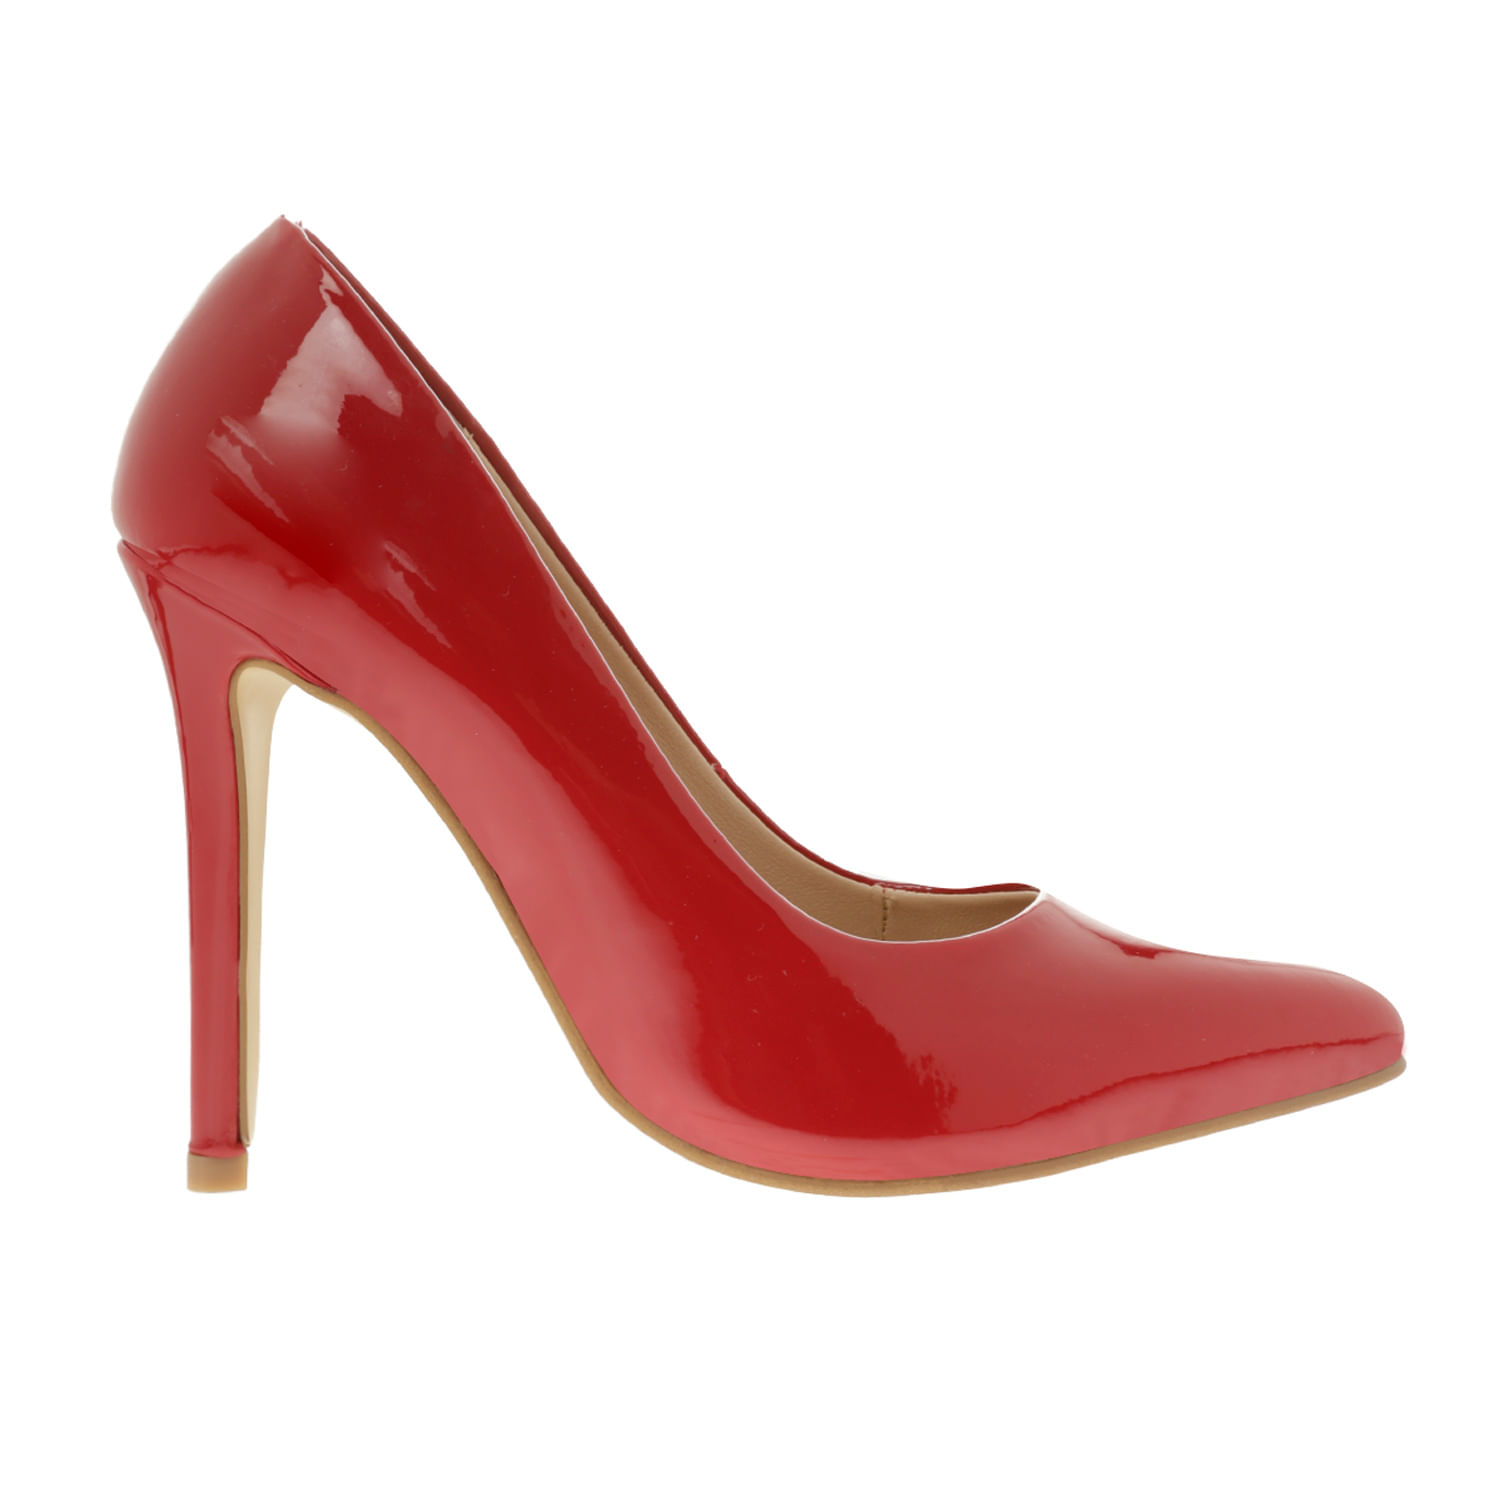 Rojo - Zapatos para Mujer | Dorothy Gaynor® - en Dorothy Gaynor